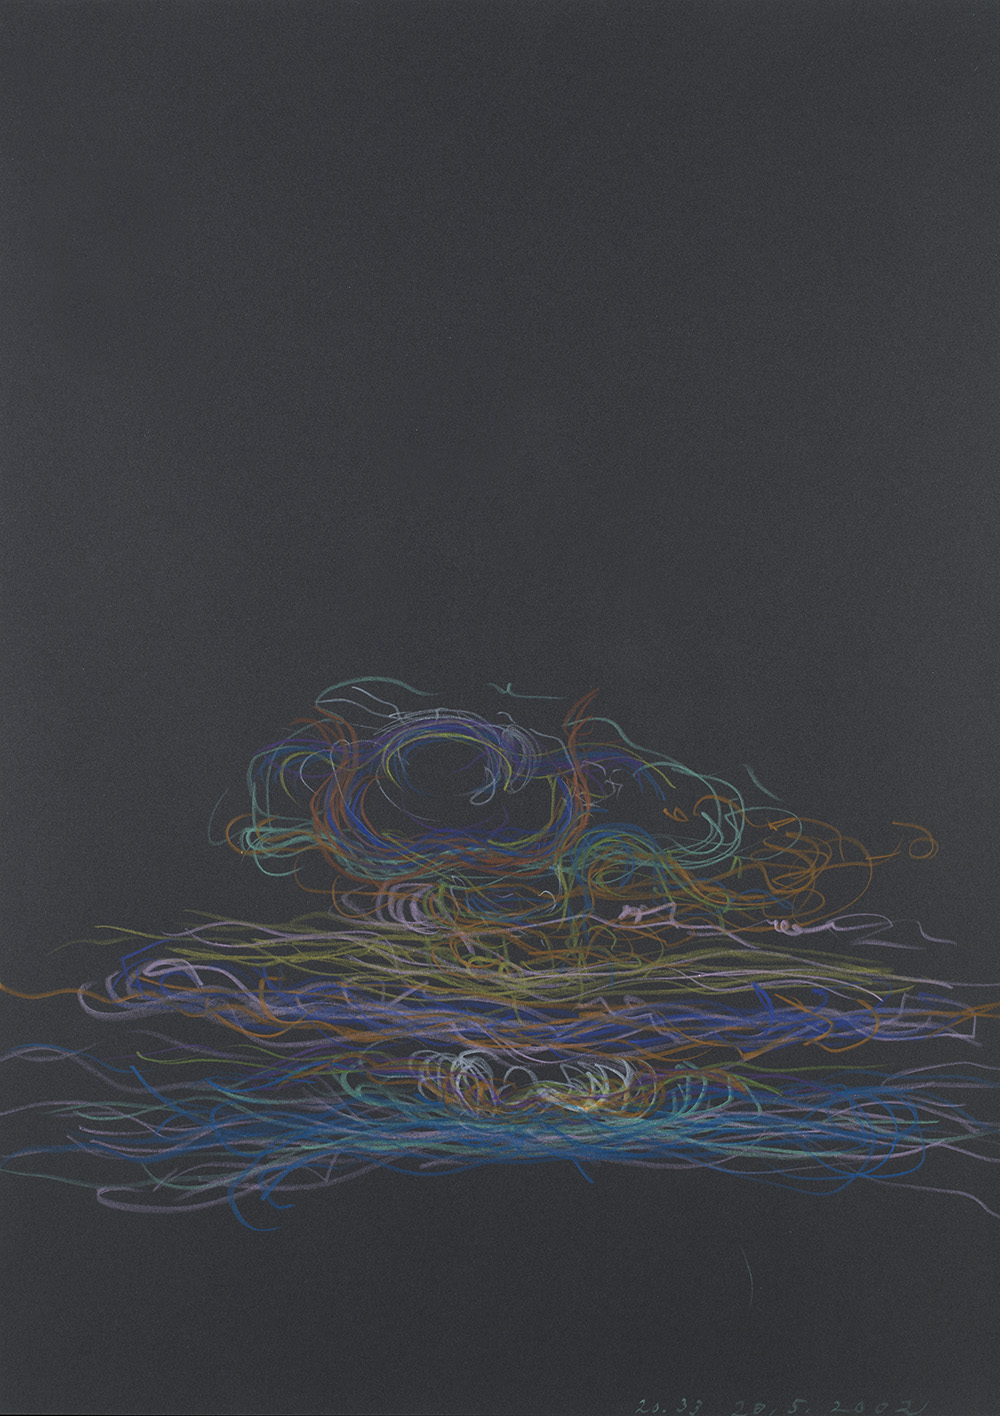   Tomáš Lampar    Untitled  , 2002 Color pencil on paper 16.54 x 11.61 inches 42 x 29.5 cm TLa 7 